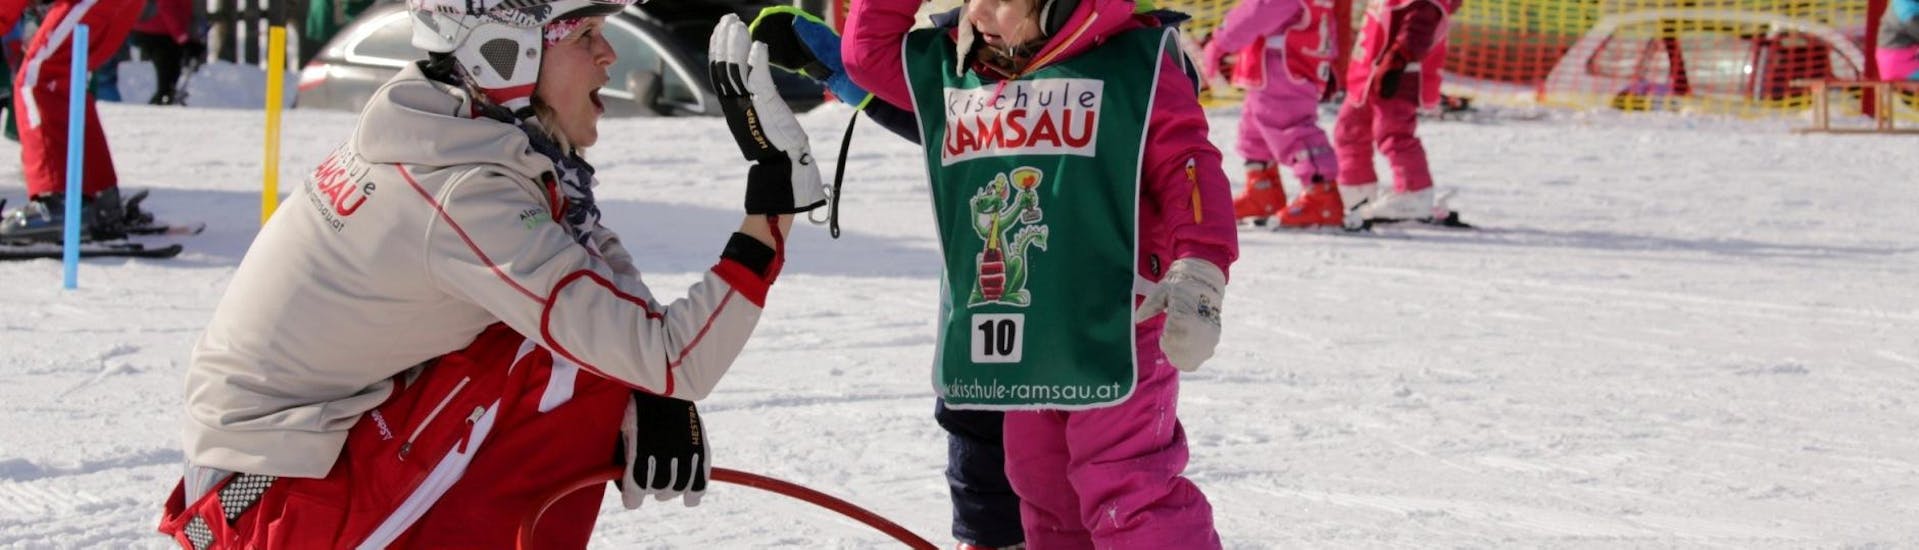 Clases de esquí para niños a partir de 3 años para todos los niveles con Skischule Ramsau.